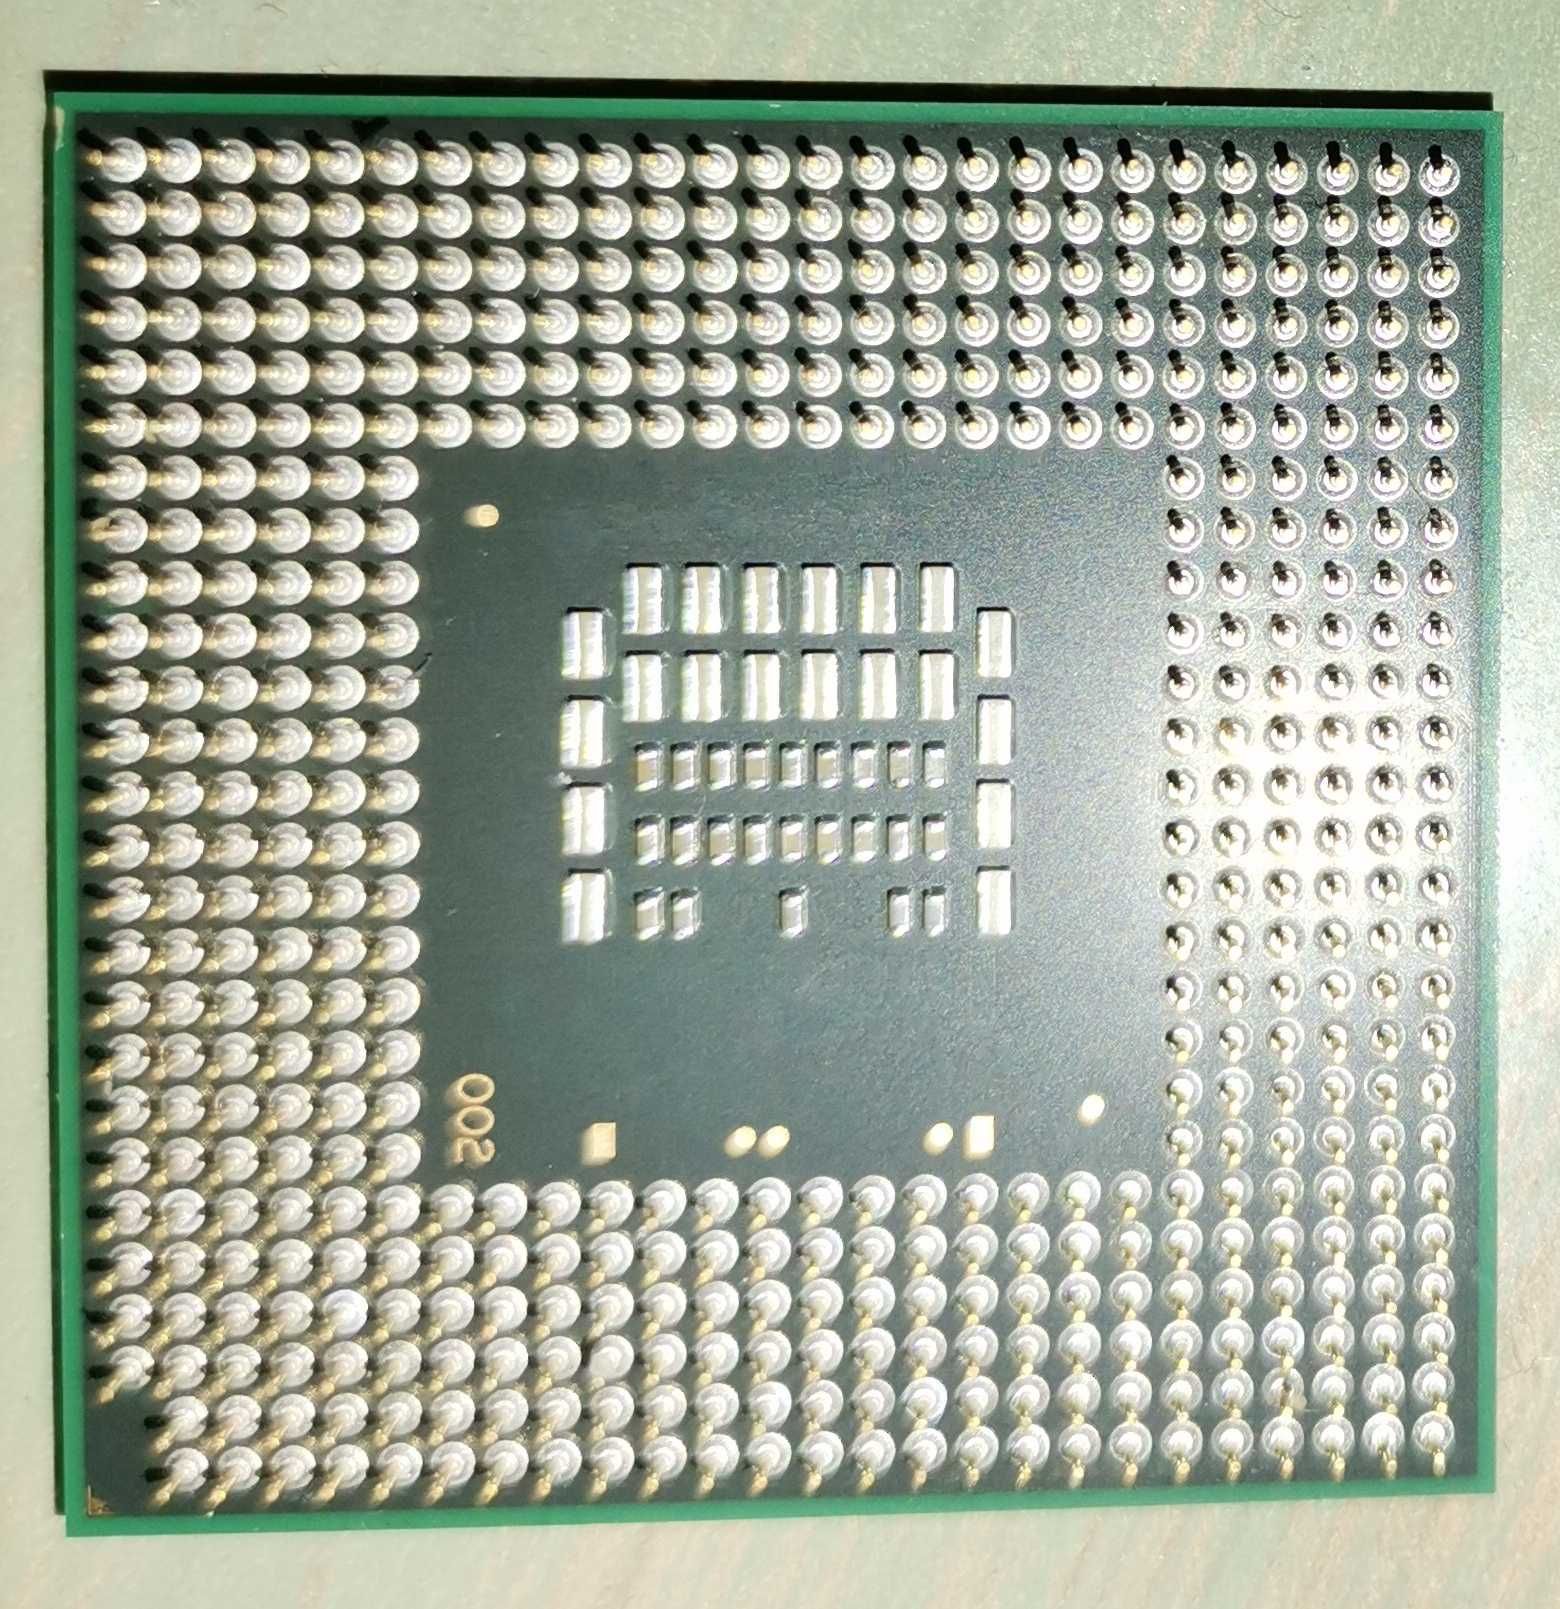 Procesor Intel C2D T9300 2,50/6/800 z laptopa Dell D630